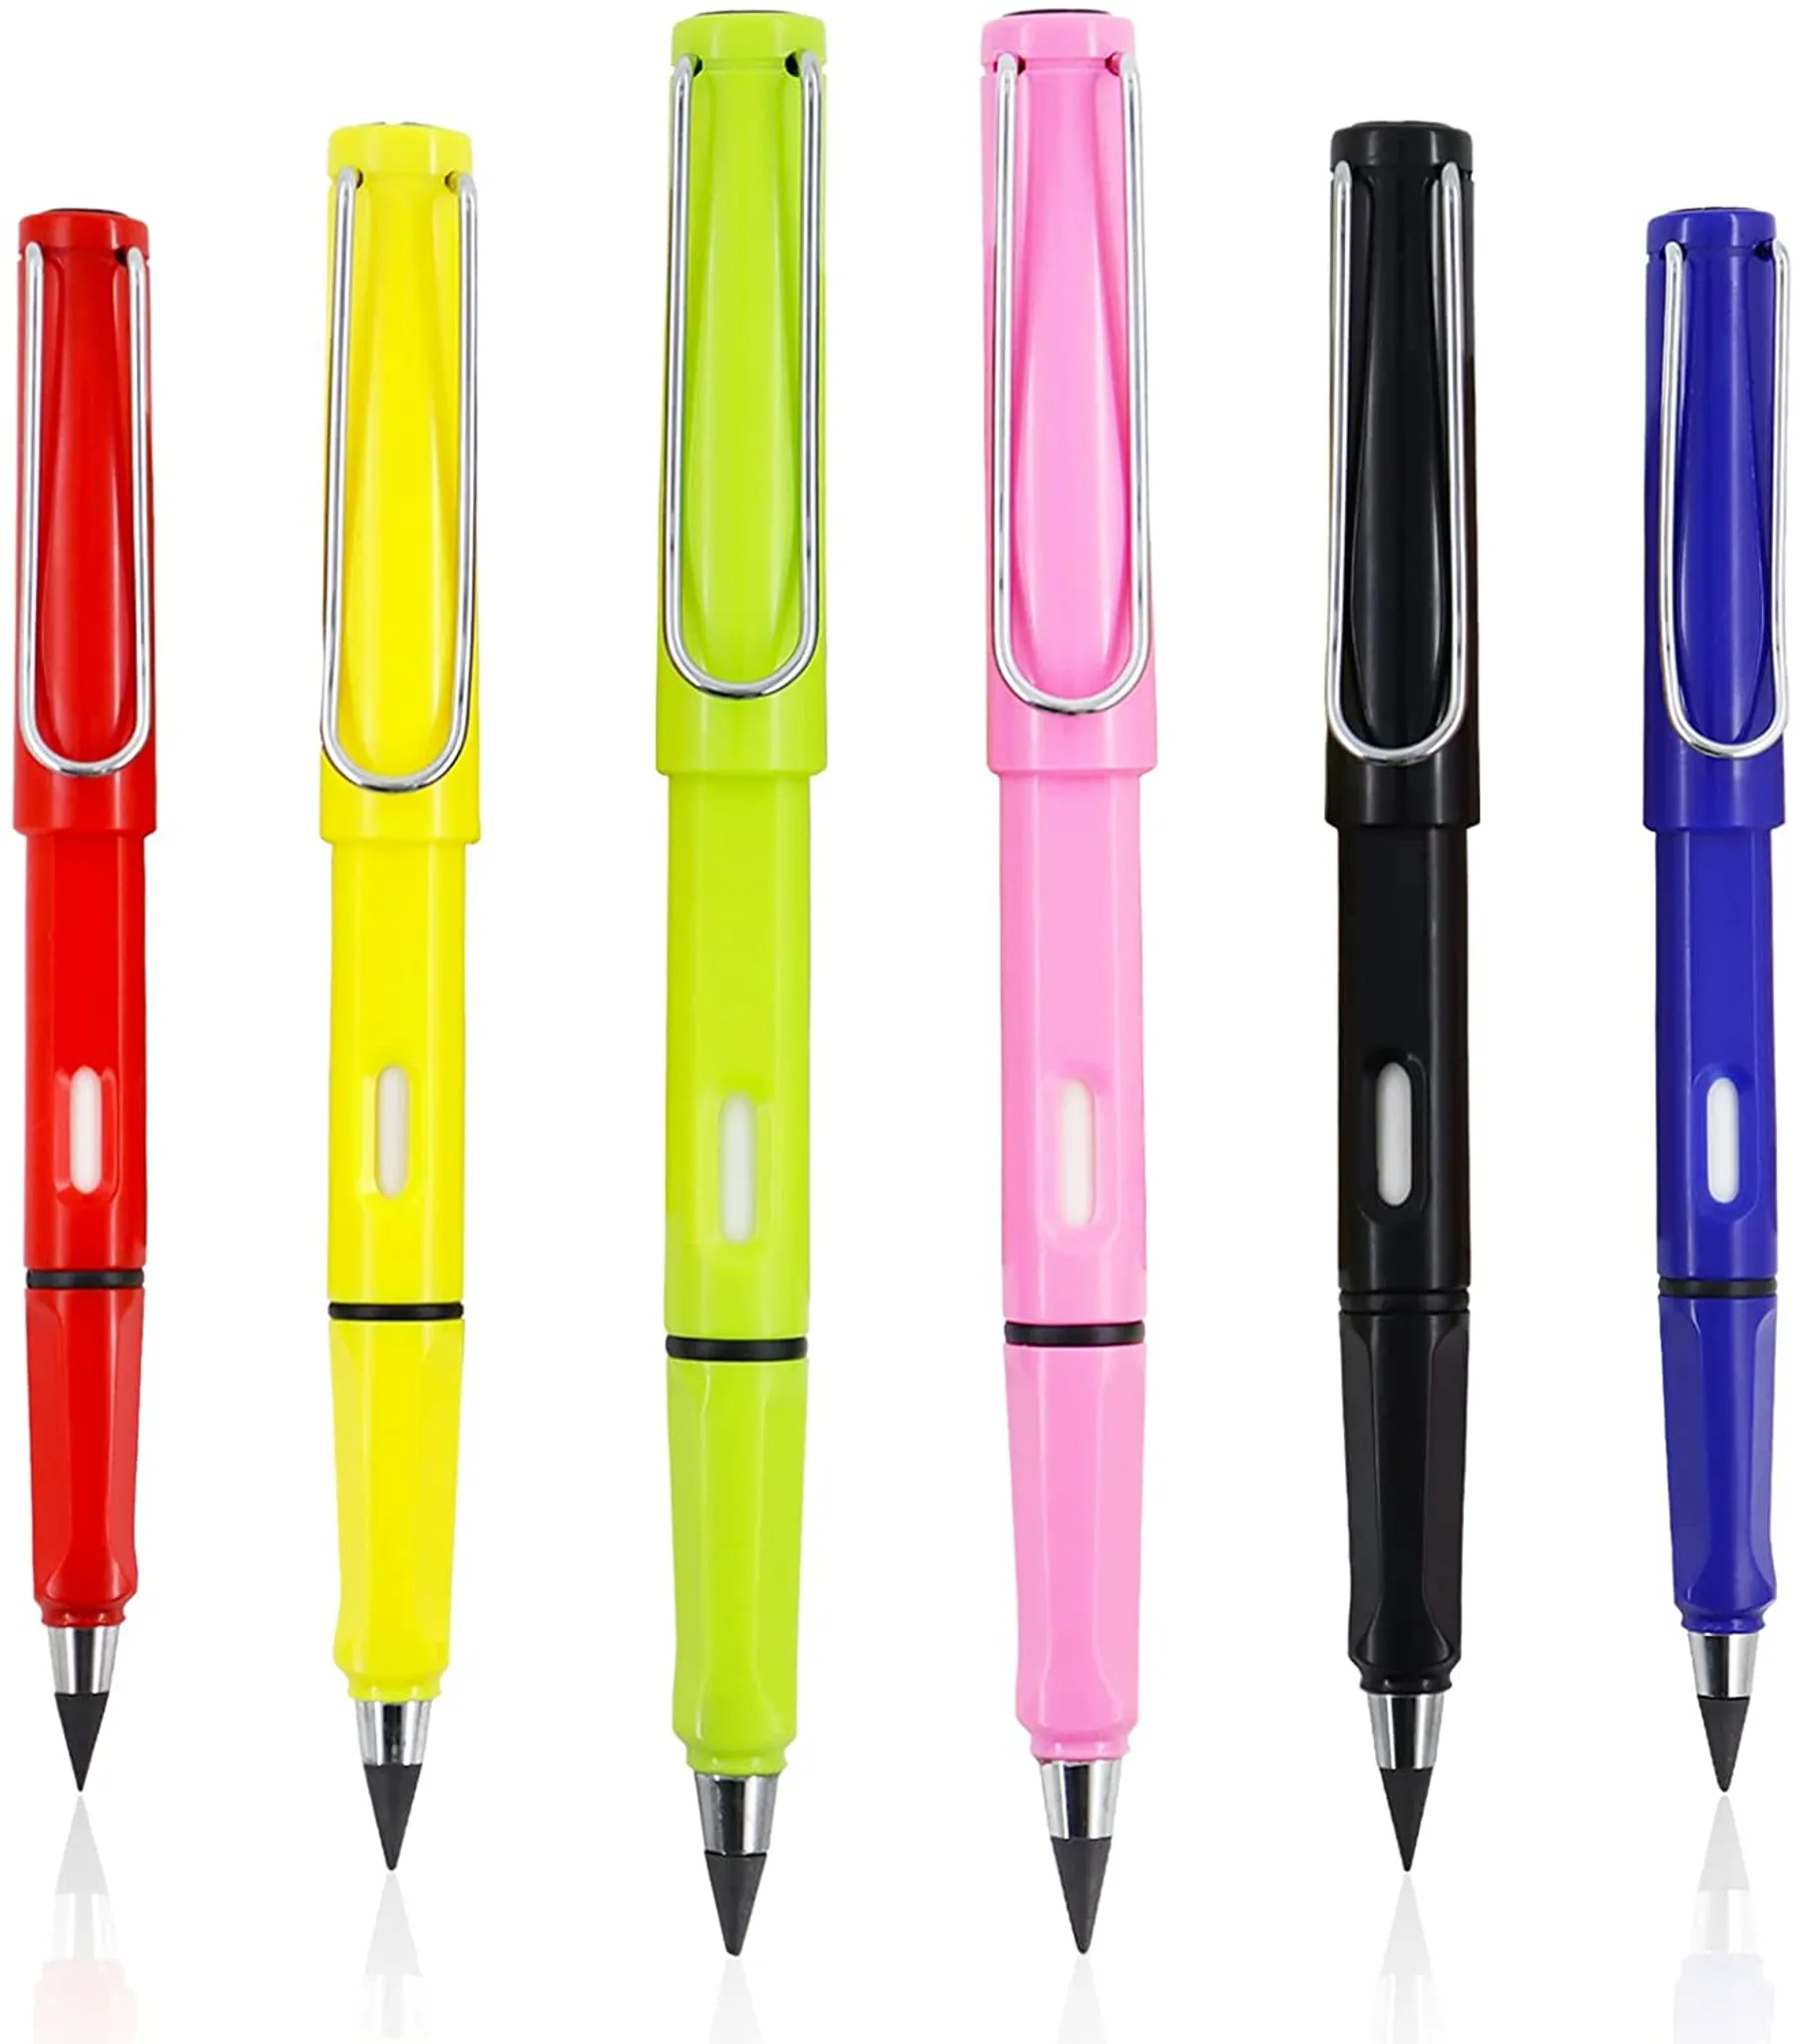 Eine Packung mit 6 Pcs Tintenlose Bleistifte,Bleistift ist nicht leicht zu brechen,Portable Everlasting Pencil Wiederverwendbar,Unbegrenztes Schreiben Ewiger Bleistift Kein Tintenstift 